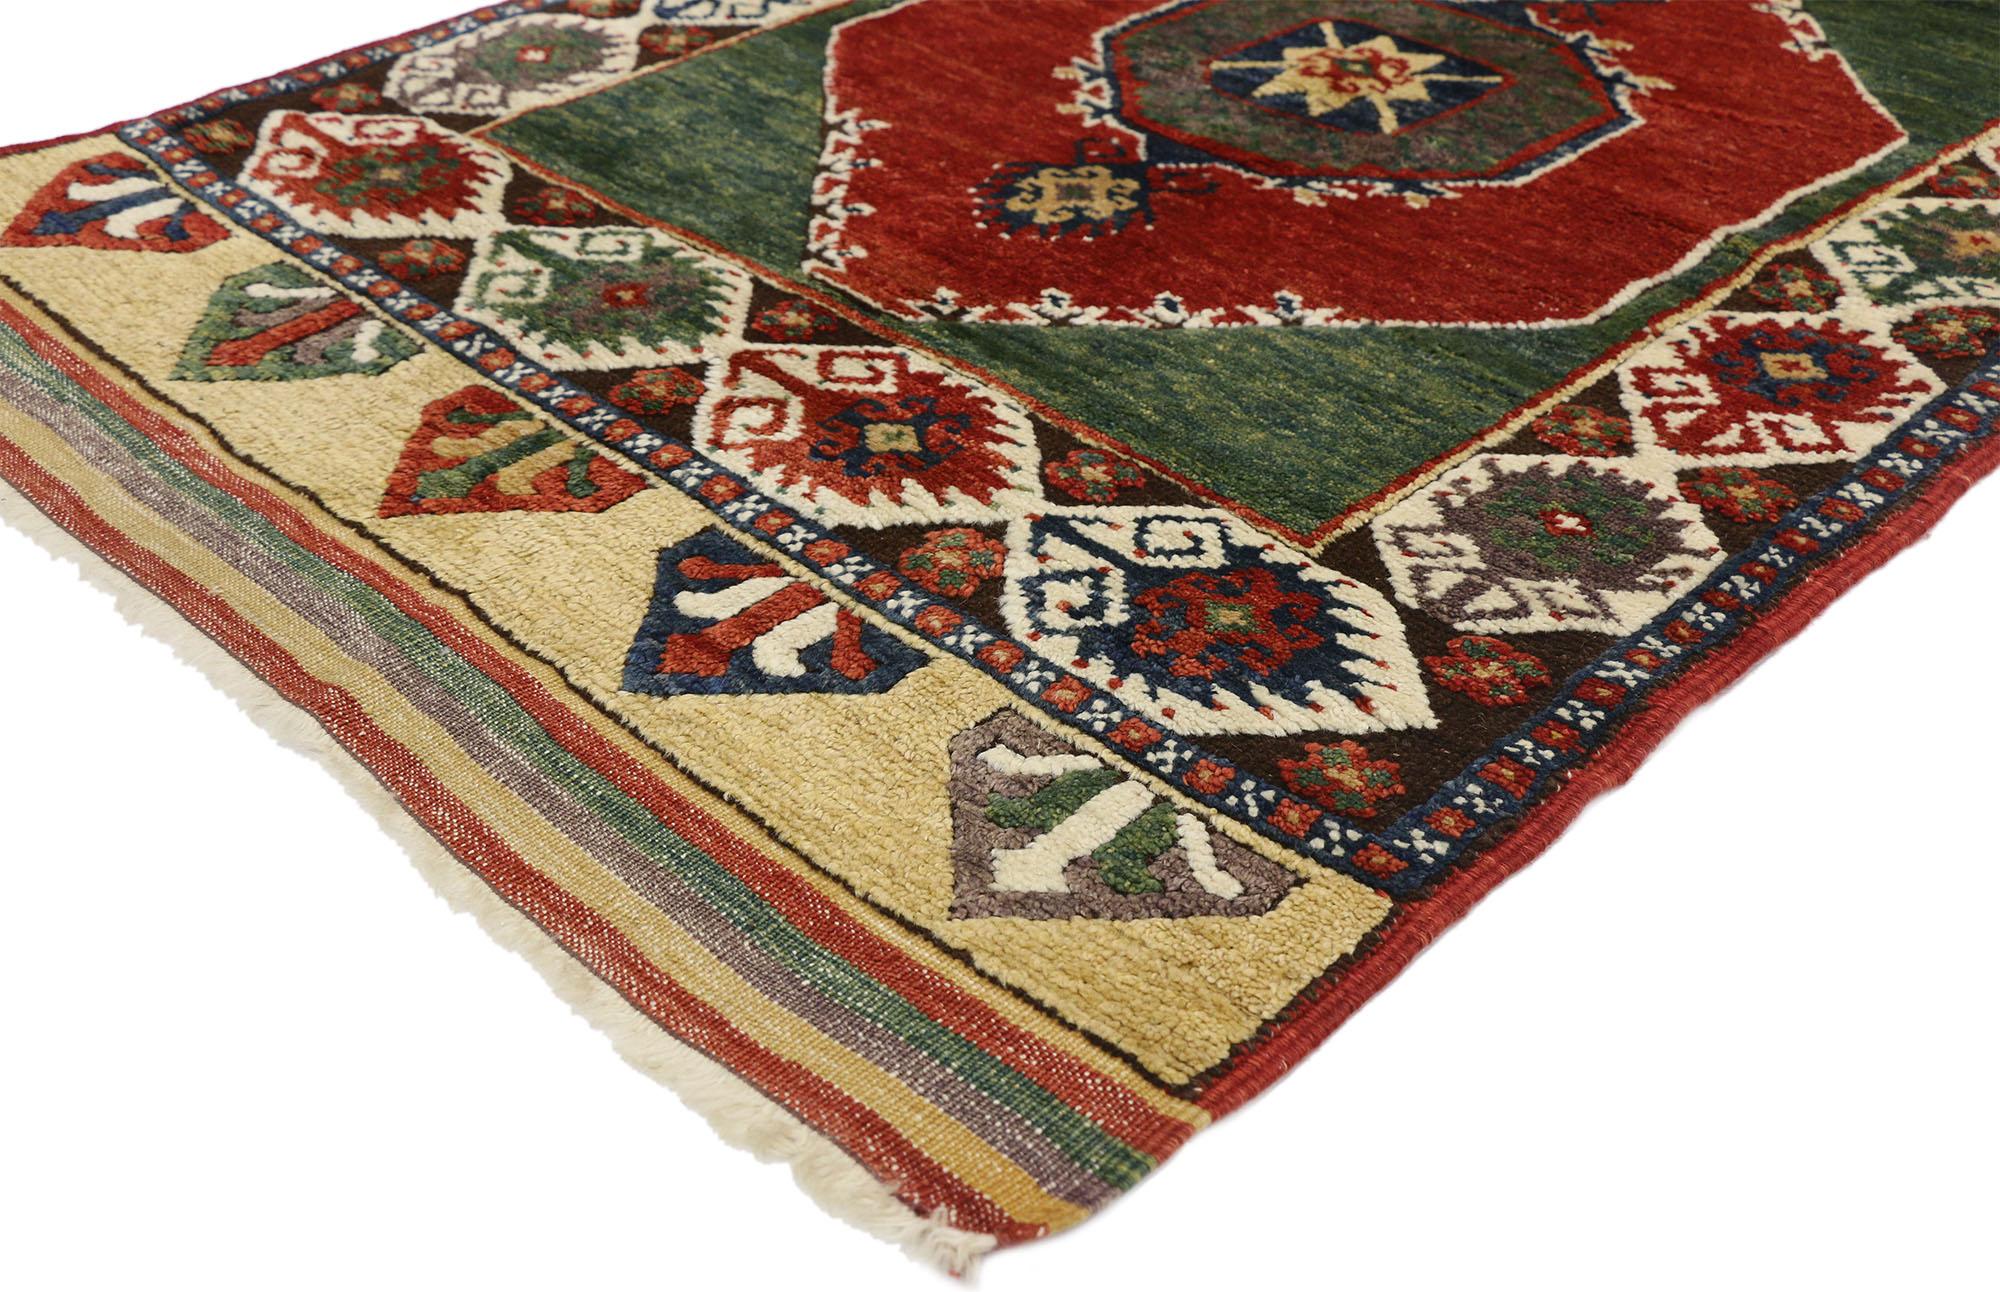 52444, alter türkischer Oushak-Teppich mit amerikanischem Handwerker-Stammesstil. Dieser handgeknüpfte türkische Oushak-Teppich aus Wolle mit anatolischer Symbolik im amerikanischen Craftsman-Stil hat einen klassischen, stammesgeschichtlichen Charme